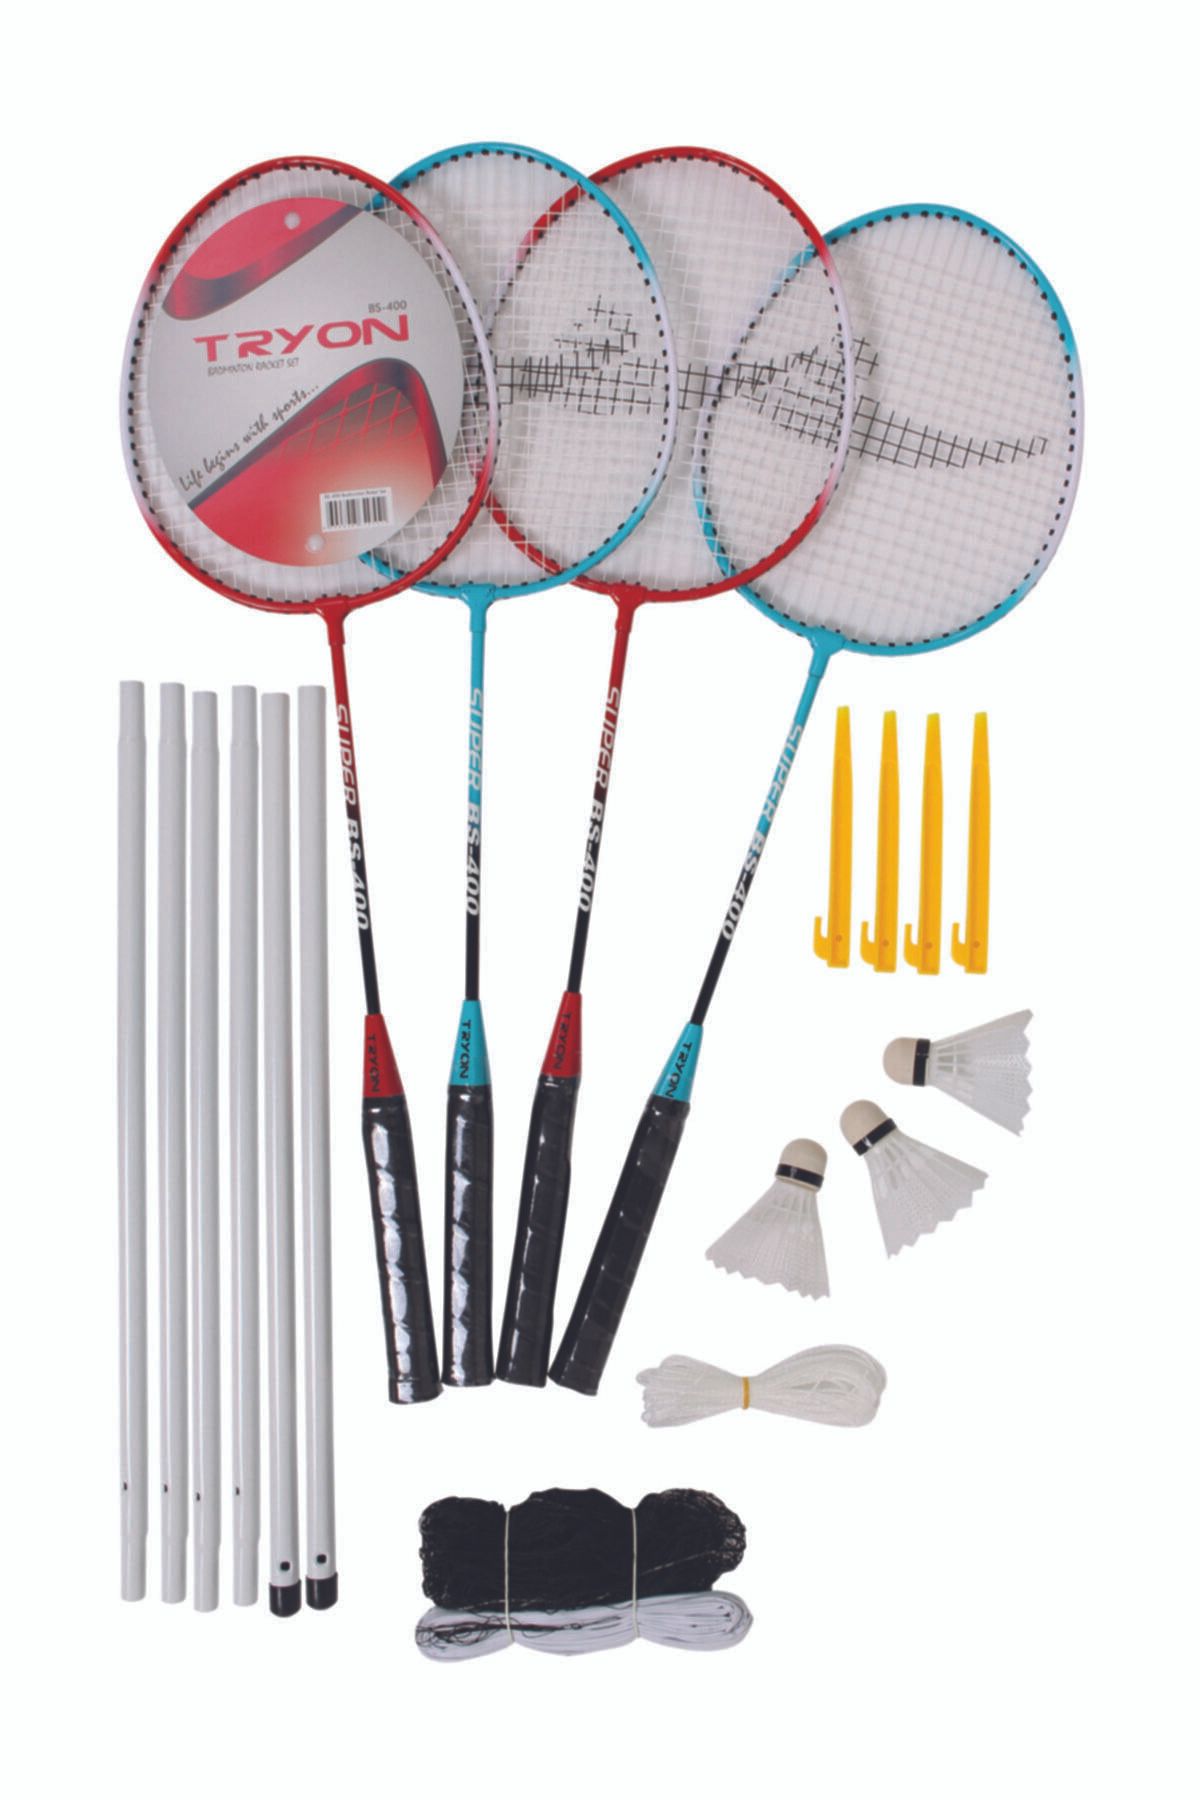 TRYON Badminton Raket Set Ağ Dahil